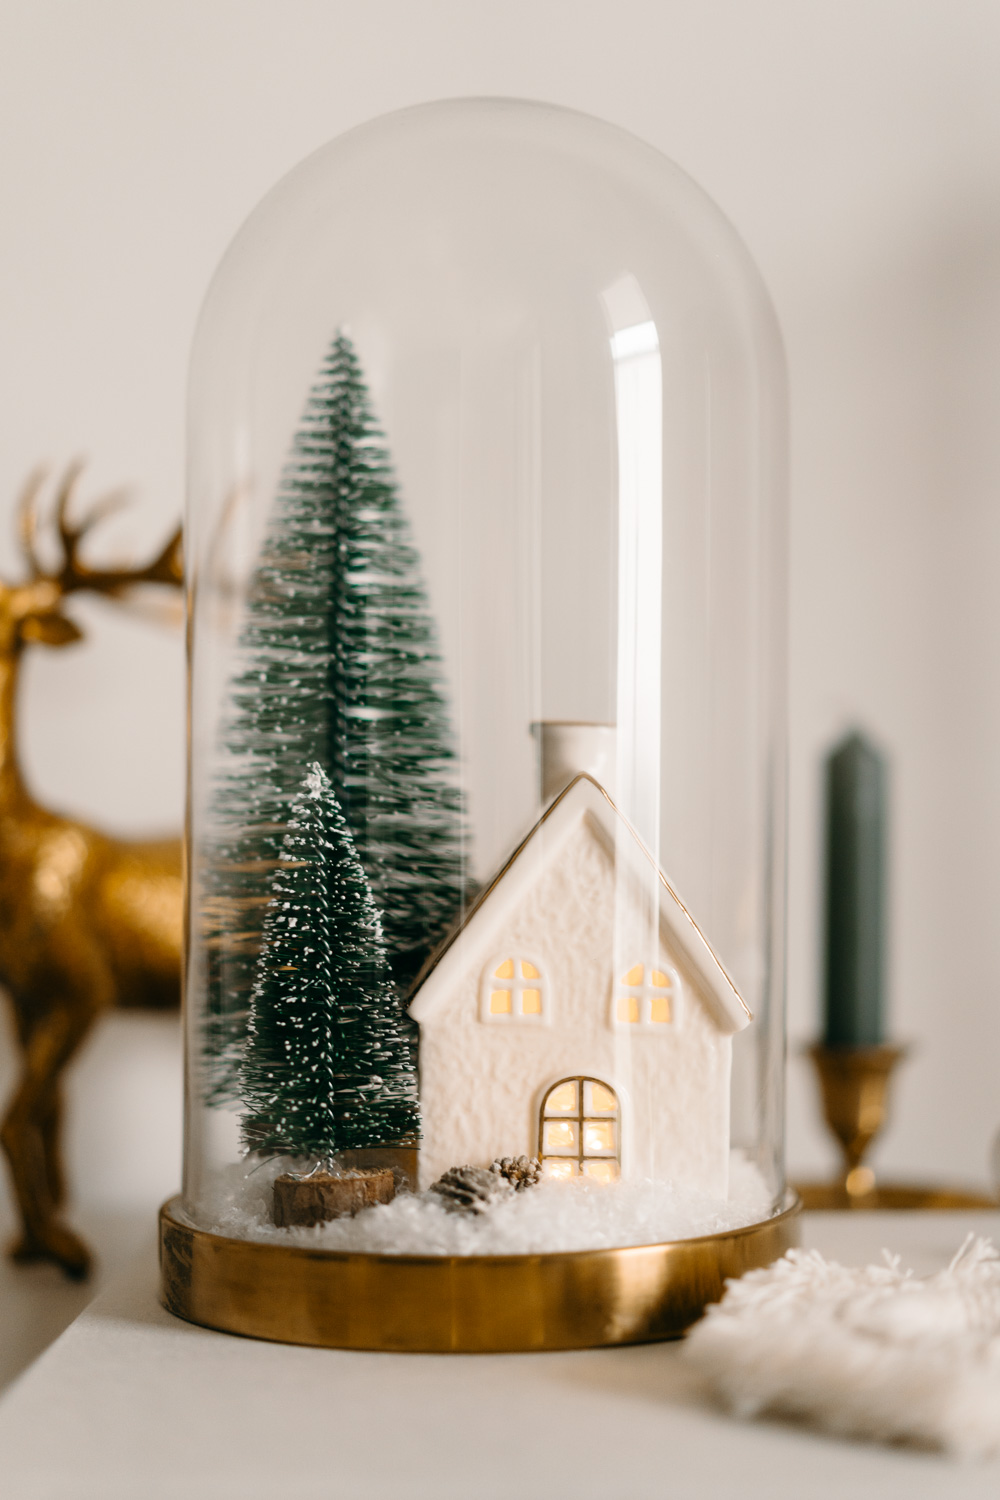 Was gibt es gemütlicheres, als zur Adventszeit Weihnachtsdeko selber zu machen? Heute bastle ich aus einer Glasglocke eine weihnachtliche DIY Schneekugel. Dazu brauchst du Kunstschnee, zwei Mini-Tannenbäume und ein kleines Kerzenhäuschen mit Lichterkette. Hier geht’s zur kostenlosen Anleitung #weihnachten #weihnachtsdeko #basteln #diy #selbermachen @melaliving